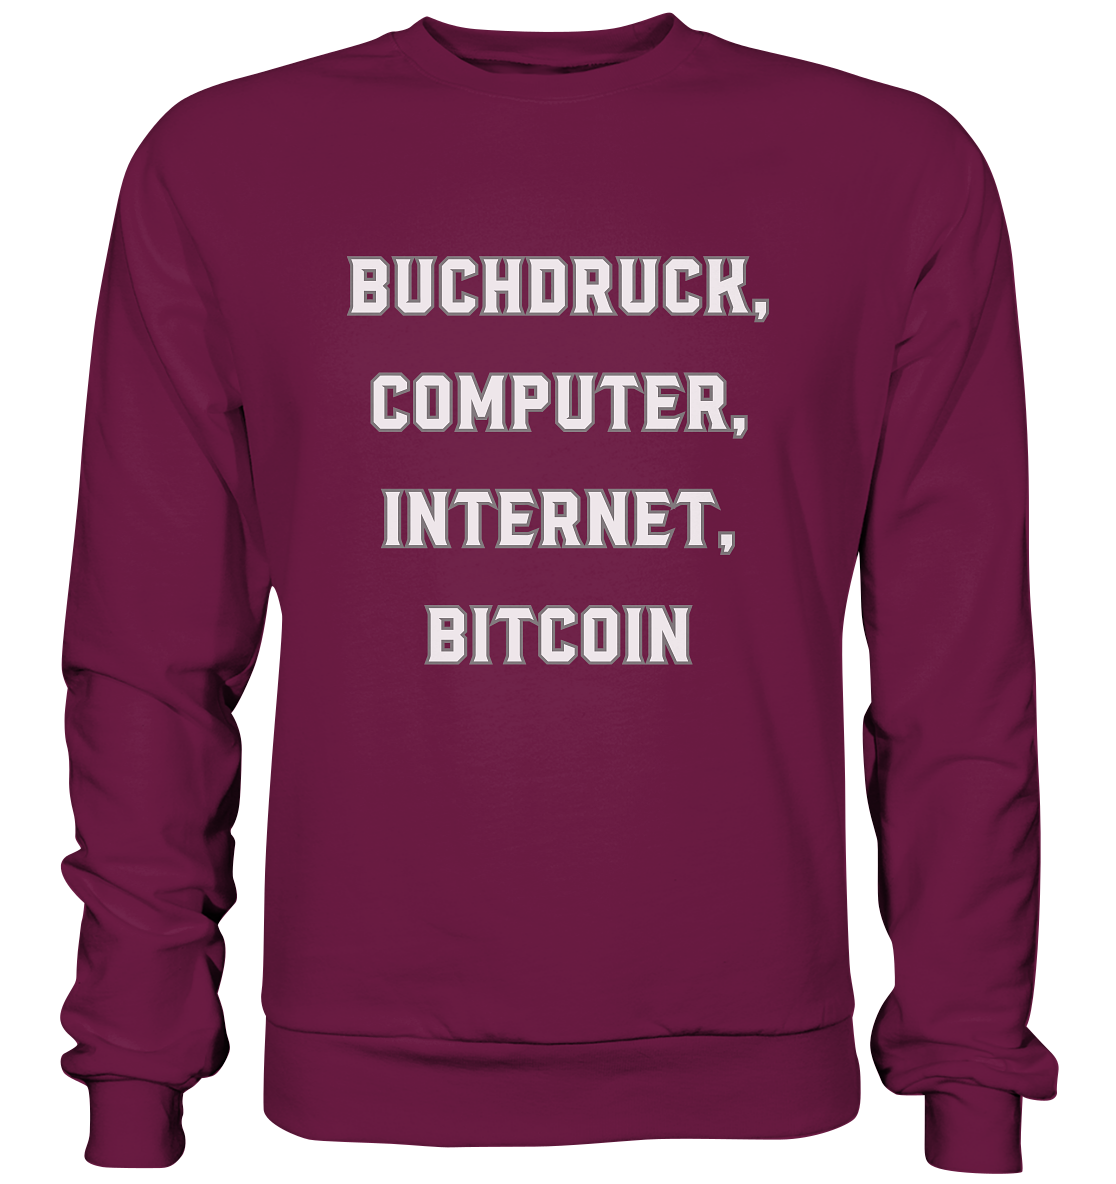 Buchdruck, Computer, Internet, Bitcoin - Premium Sweatshirt